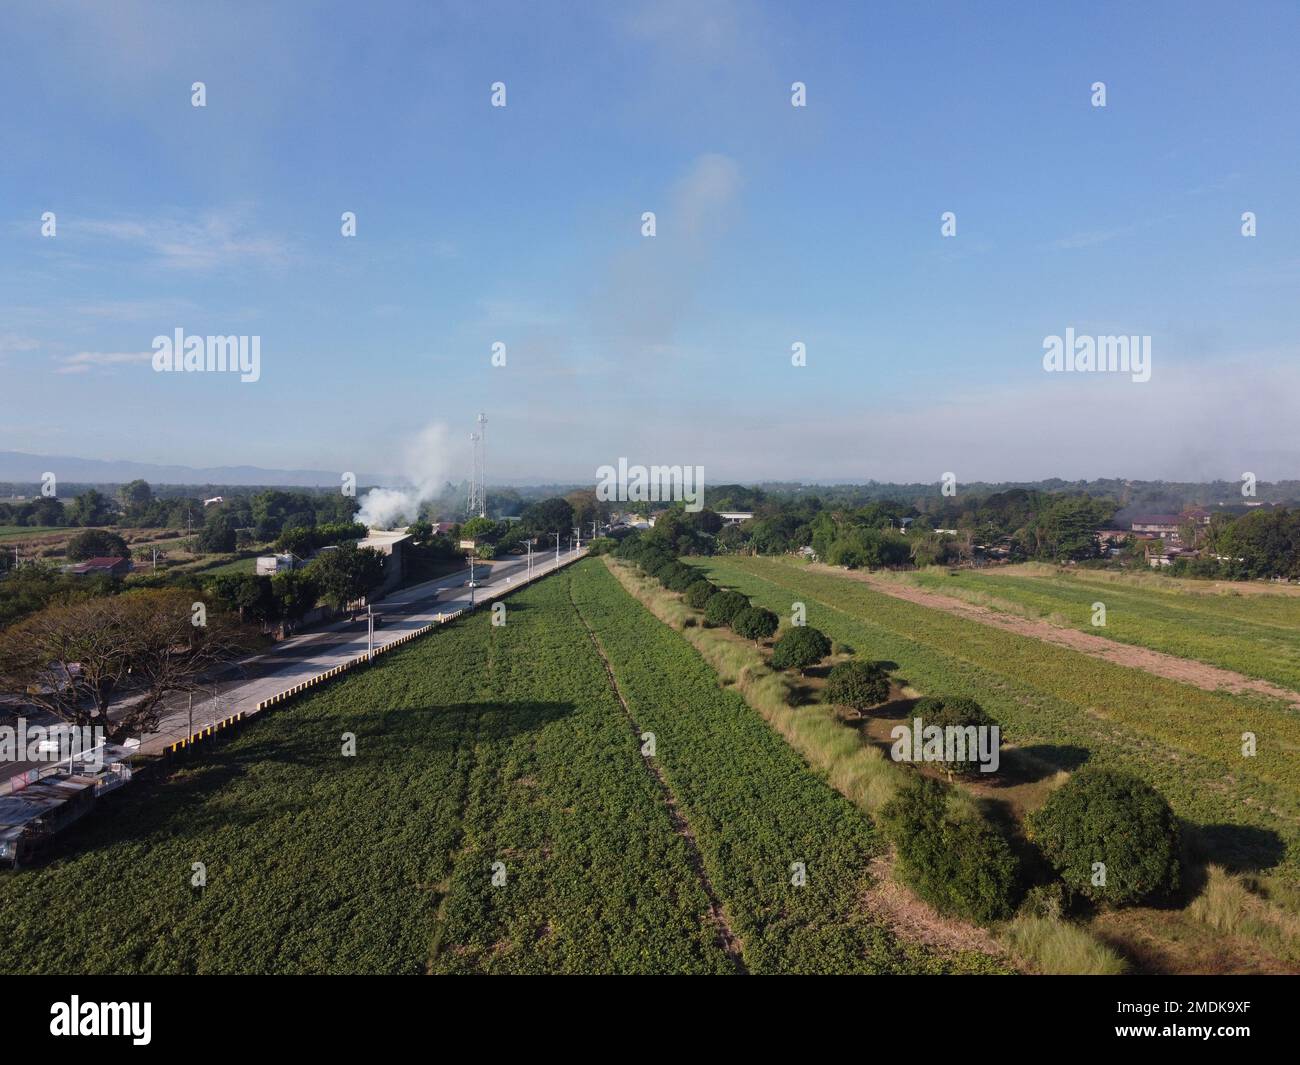 Capture d'images de drone sur un champ fumeur et un paysage agricole Banque D'Images